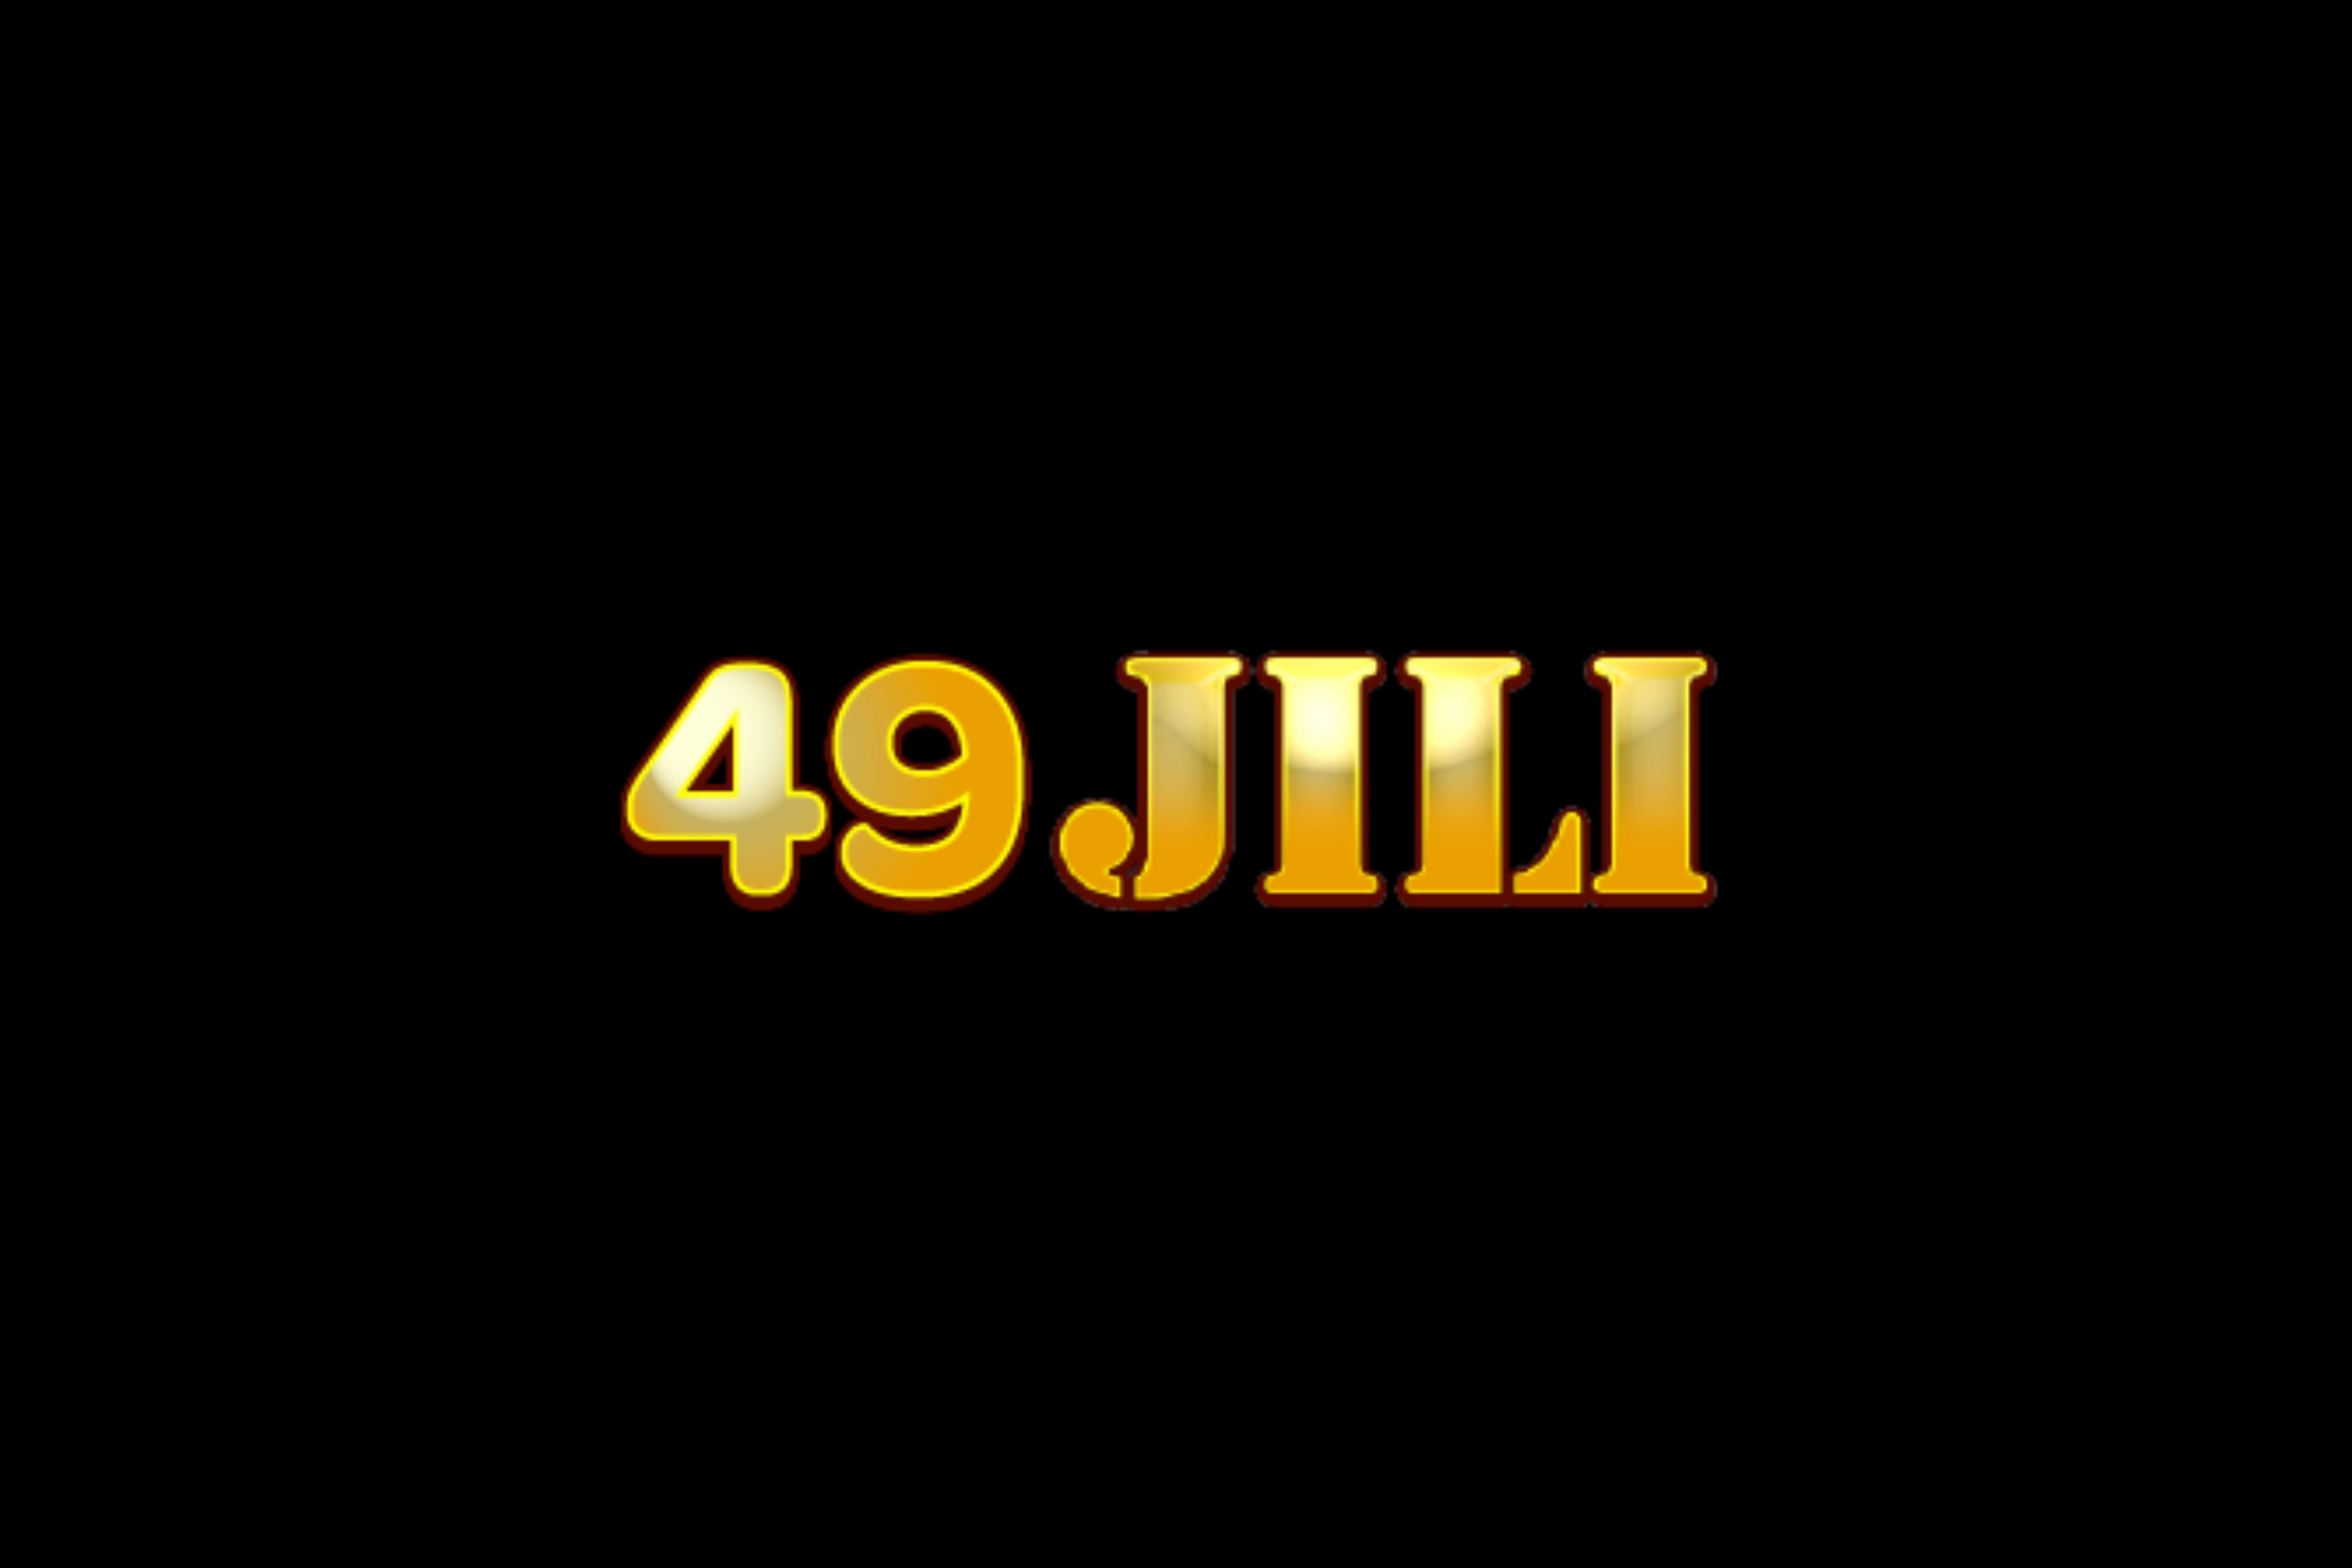 49jili com